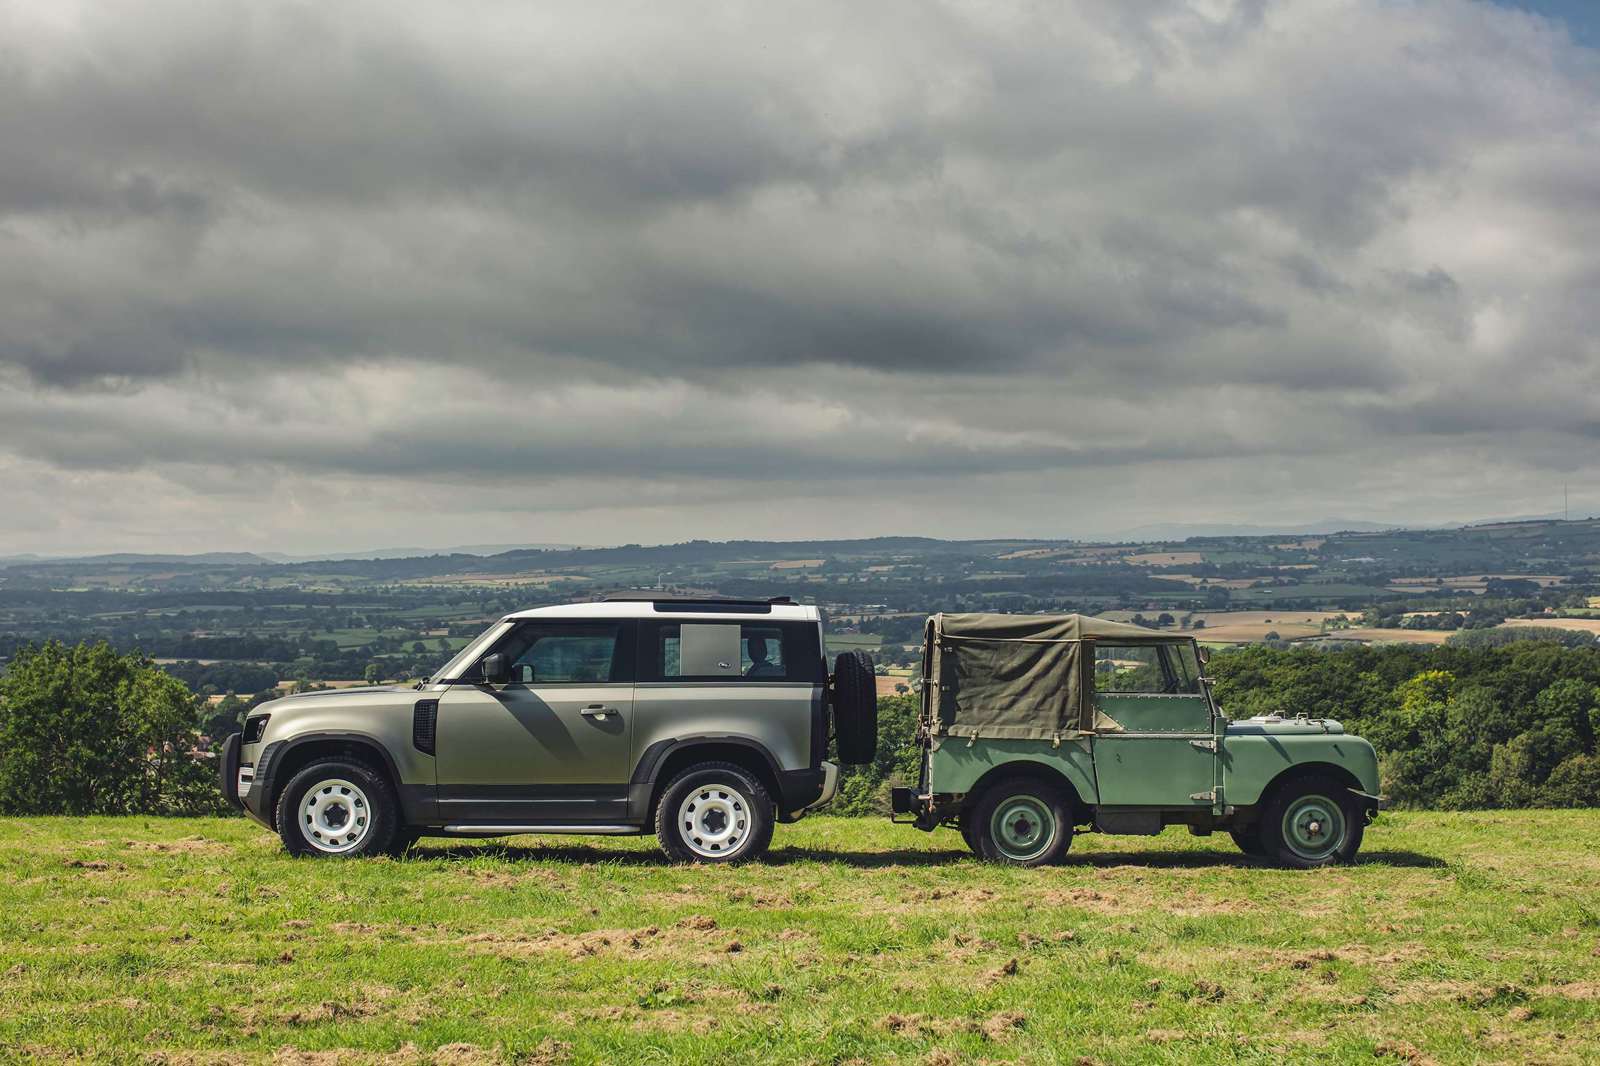 Lijkt op Technologie Lee New Land Rover Defender to make UK debut at the Goodwood Revival